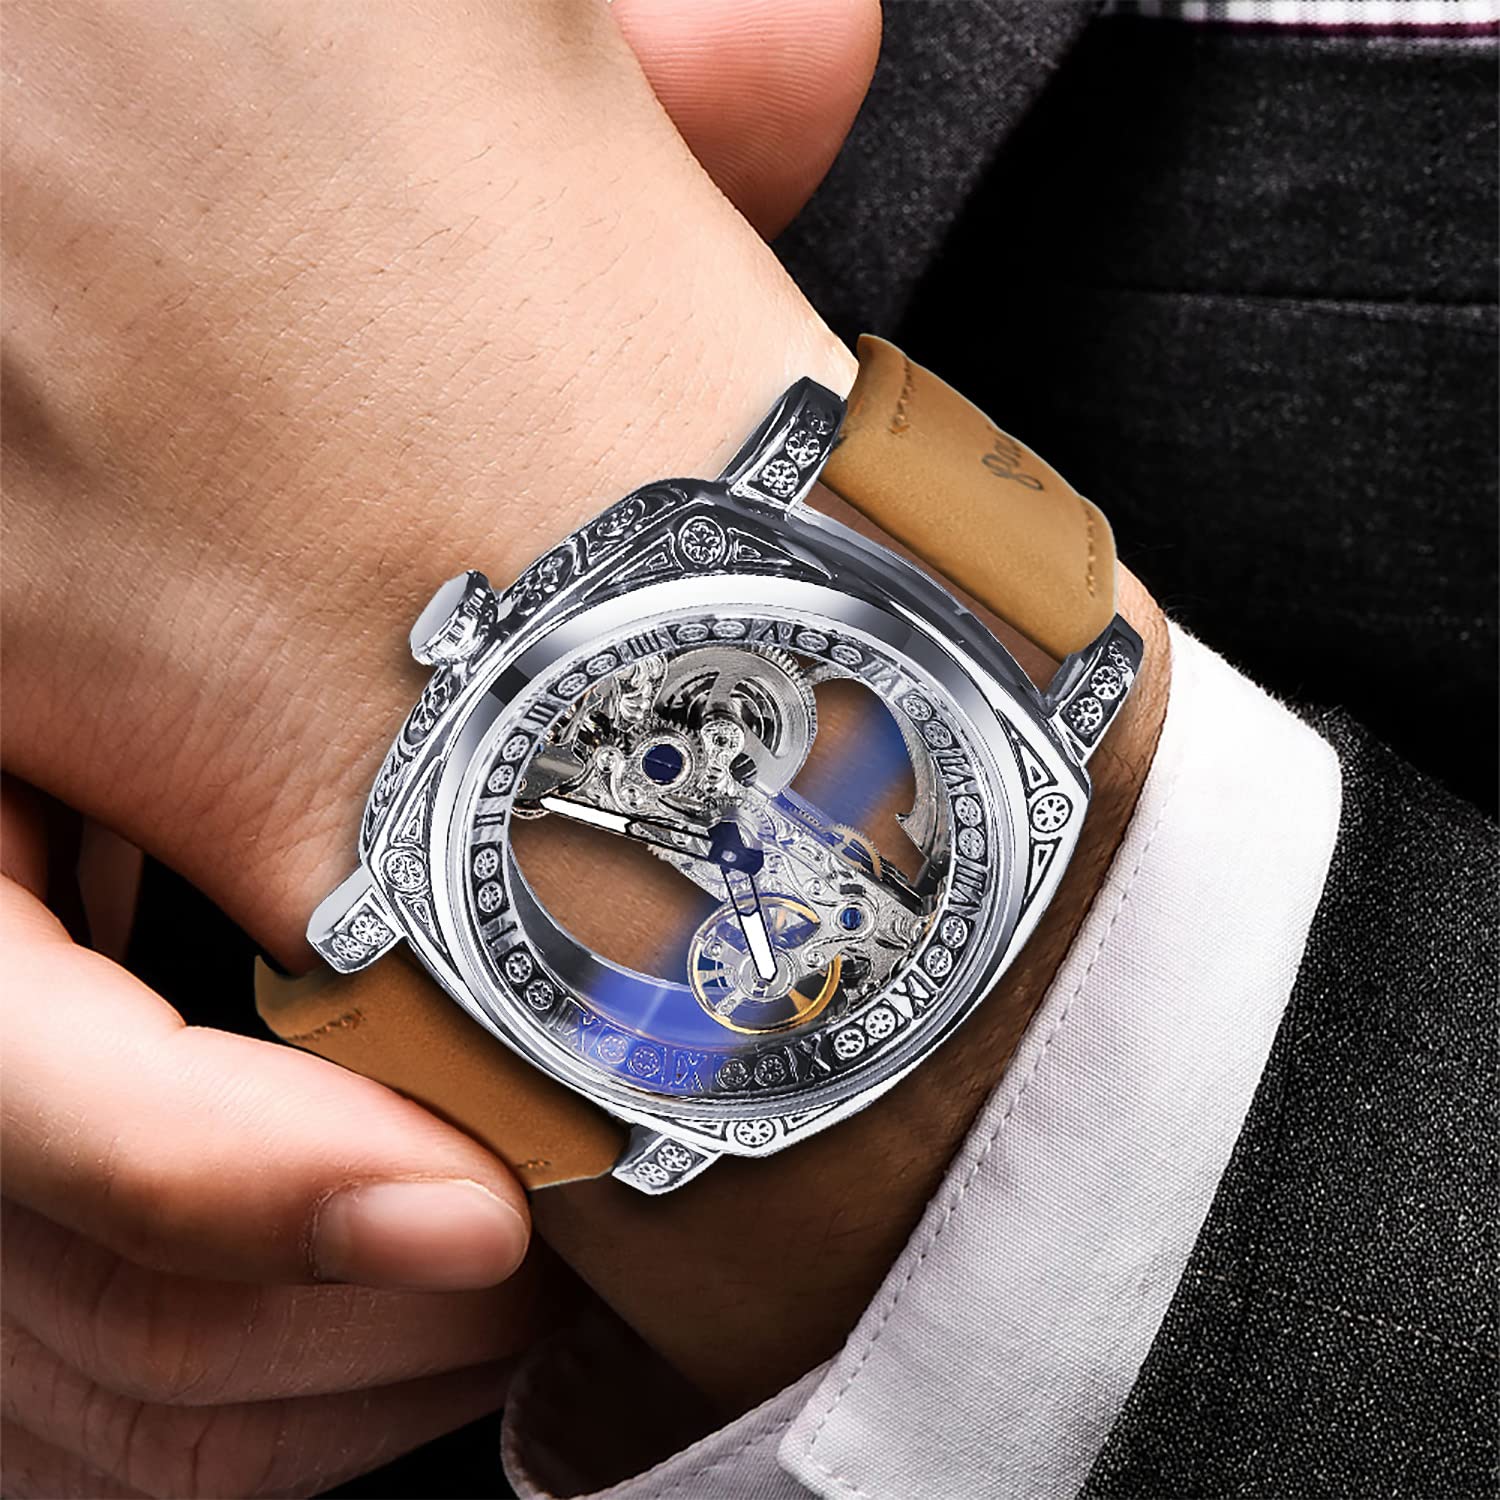 FORSINING Herren Luxus Square Carving Mechanische Uhr Retro Totem Doppelseitig Hohl Skelett Selbstaufzug Automatik Uhren Vintage Lederband Armbanduhr